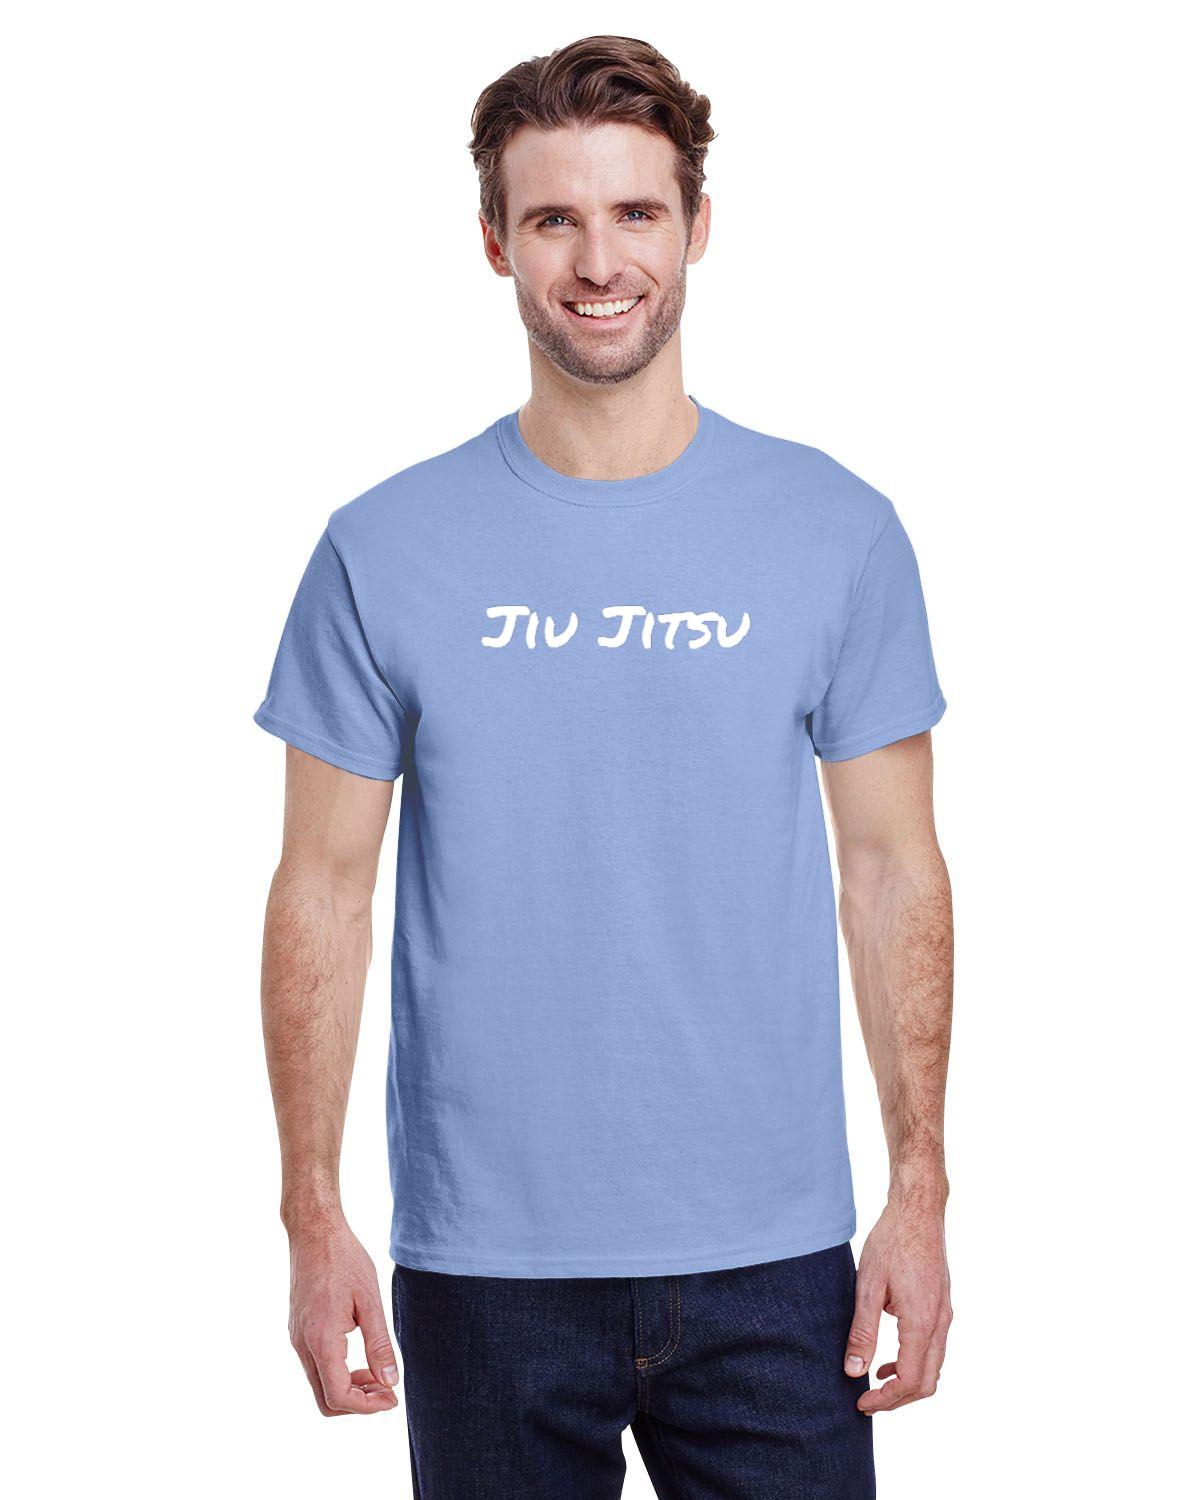 Jiu Jitsu Mens T-Shirt